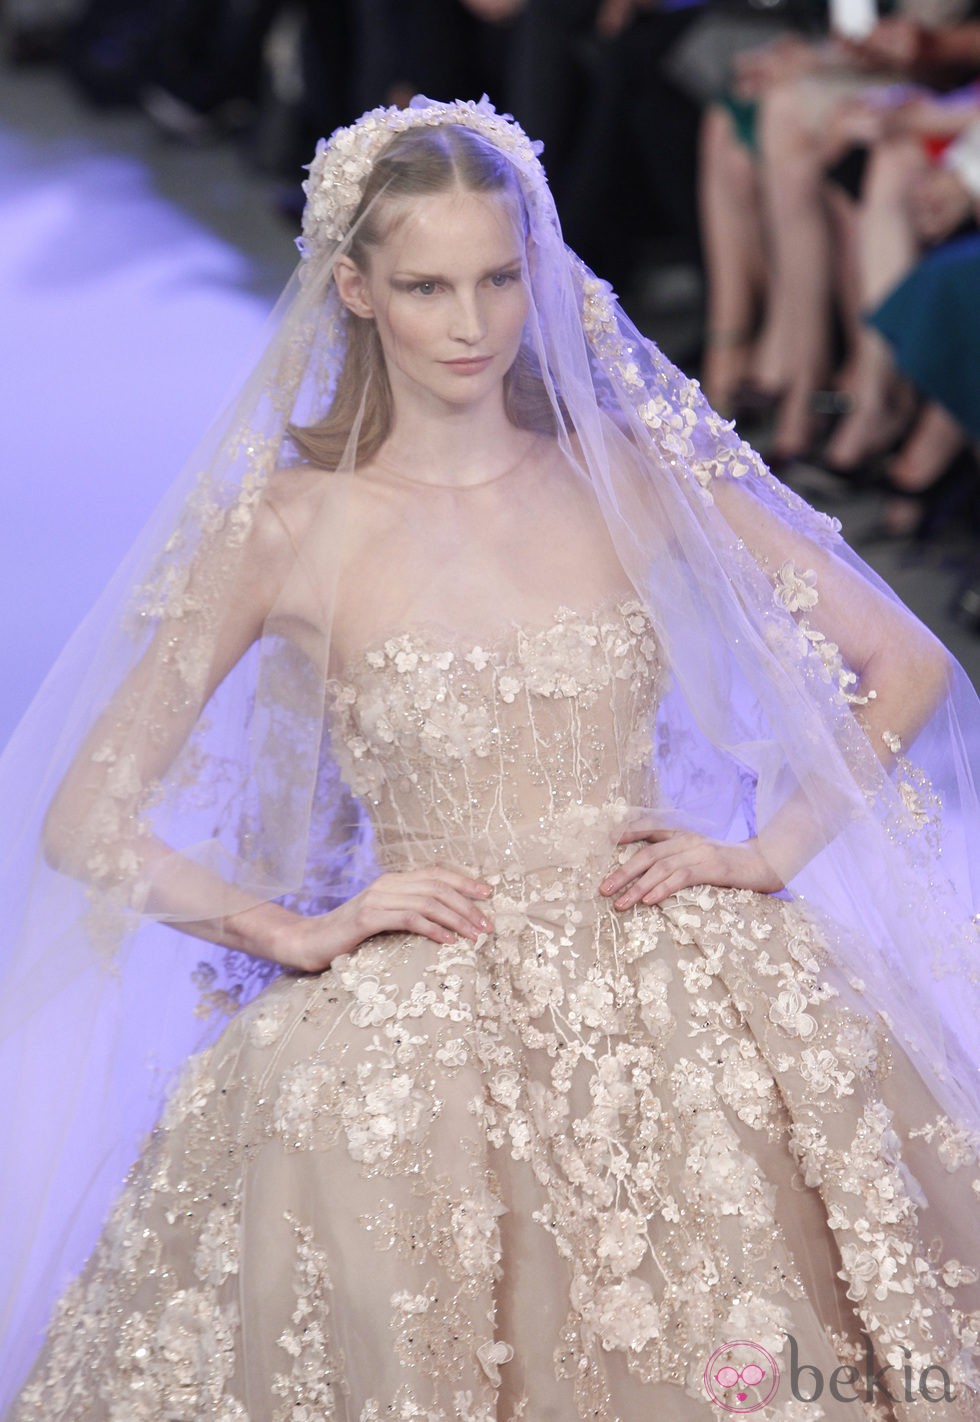 Vestido de novia de la colección primavera/verano 2014 Alta Costura de Elie Saab en la Semana de la Moda de París